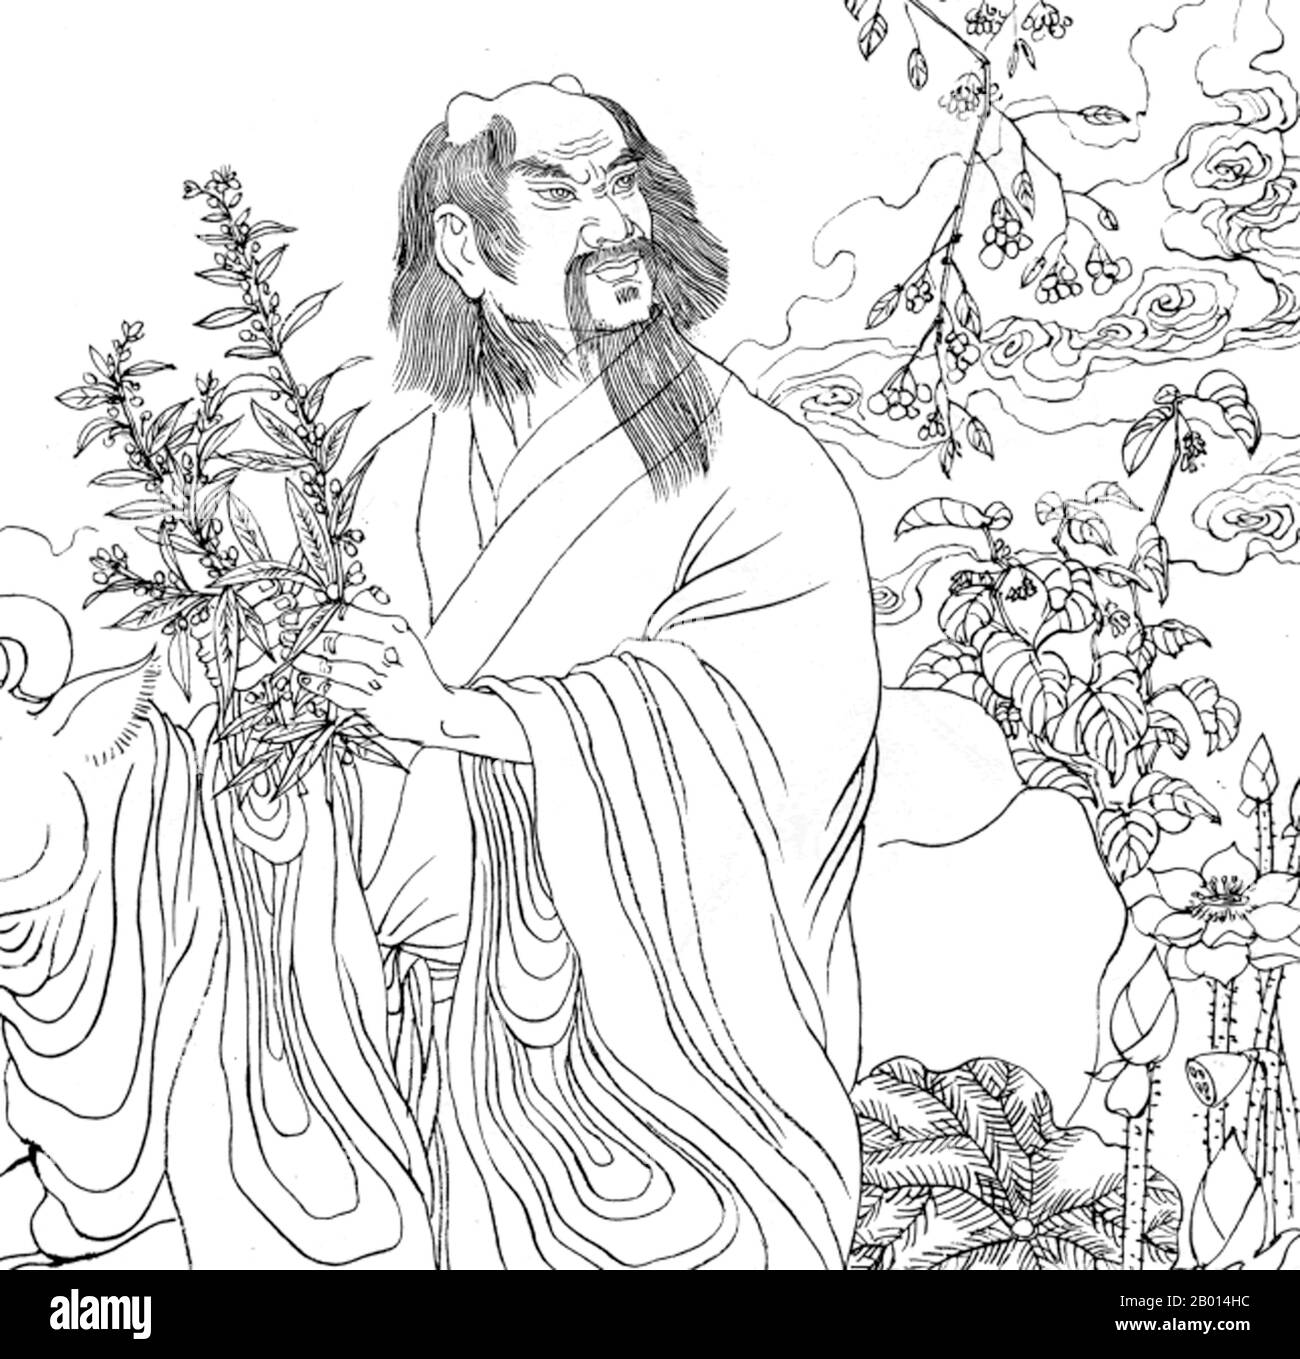 China: Shennong soberano, tres soberanos y cinco emperadores (c .3500-2000 BCE). Ilustración, c. 18th-17th siglo. Shennong (vietnamita: Than Nong), también conocido como el Emperador de los Cinco Granos (Wugu xiandì), era un gobernante de China y un héroe cultural que vivió hace unos 5.000 años y que enseñó a los antiguos chinos la práctica de la agricultura. Apropiadamente, su nombre significa ' granjero divino', y él es adorado como una deidad en la religión popular china. También se cree que descubrió el té. Foto de stock